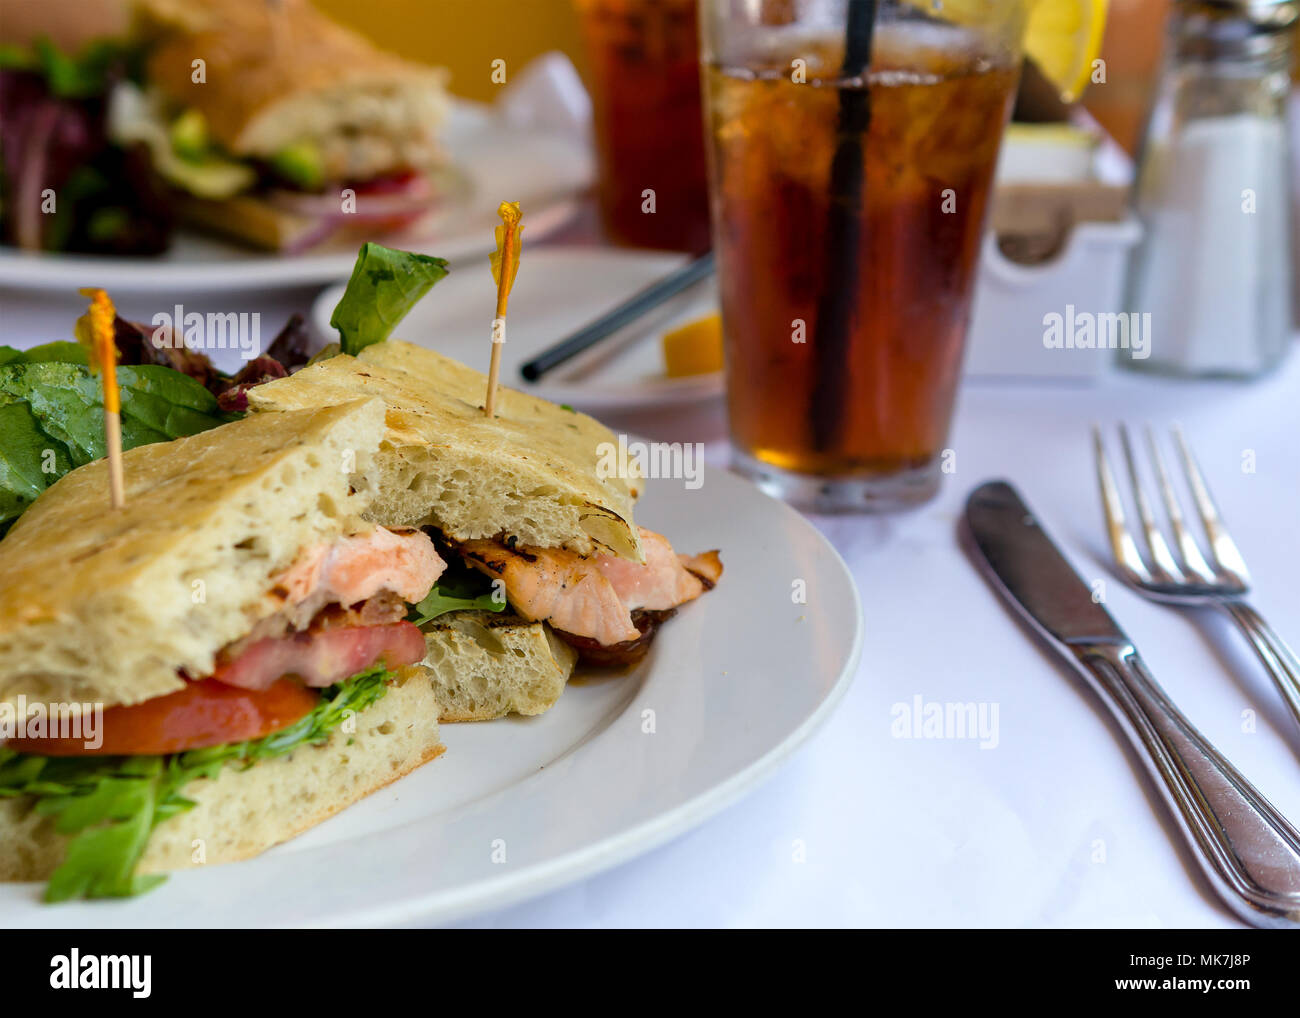 Gros plan sur le saumon grillé sandwich au pain ciabatta blanc nappe sur la plaque et dans le cadre d'un restaurant accompagné de thé glacé Banque D'Images